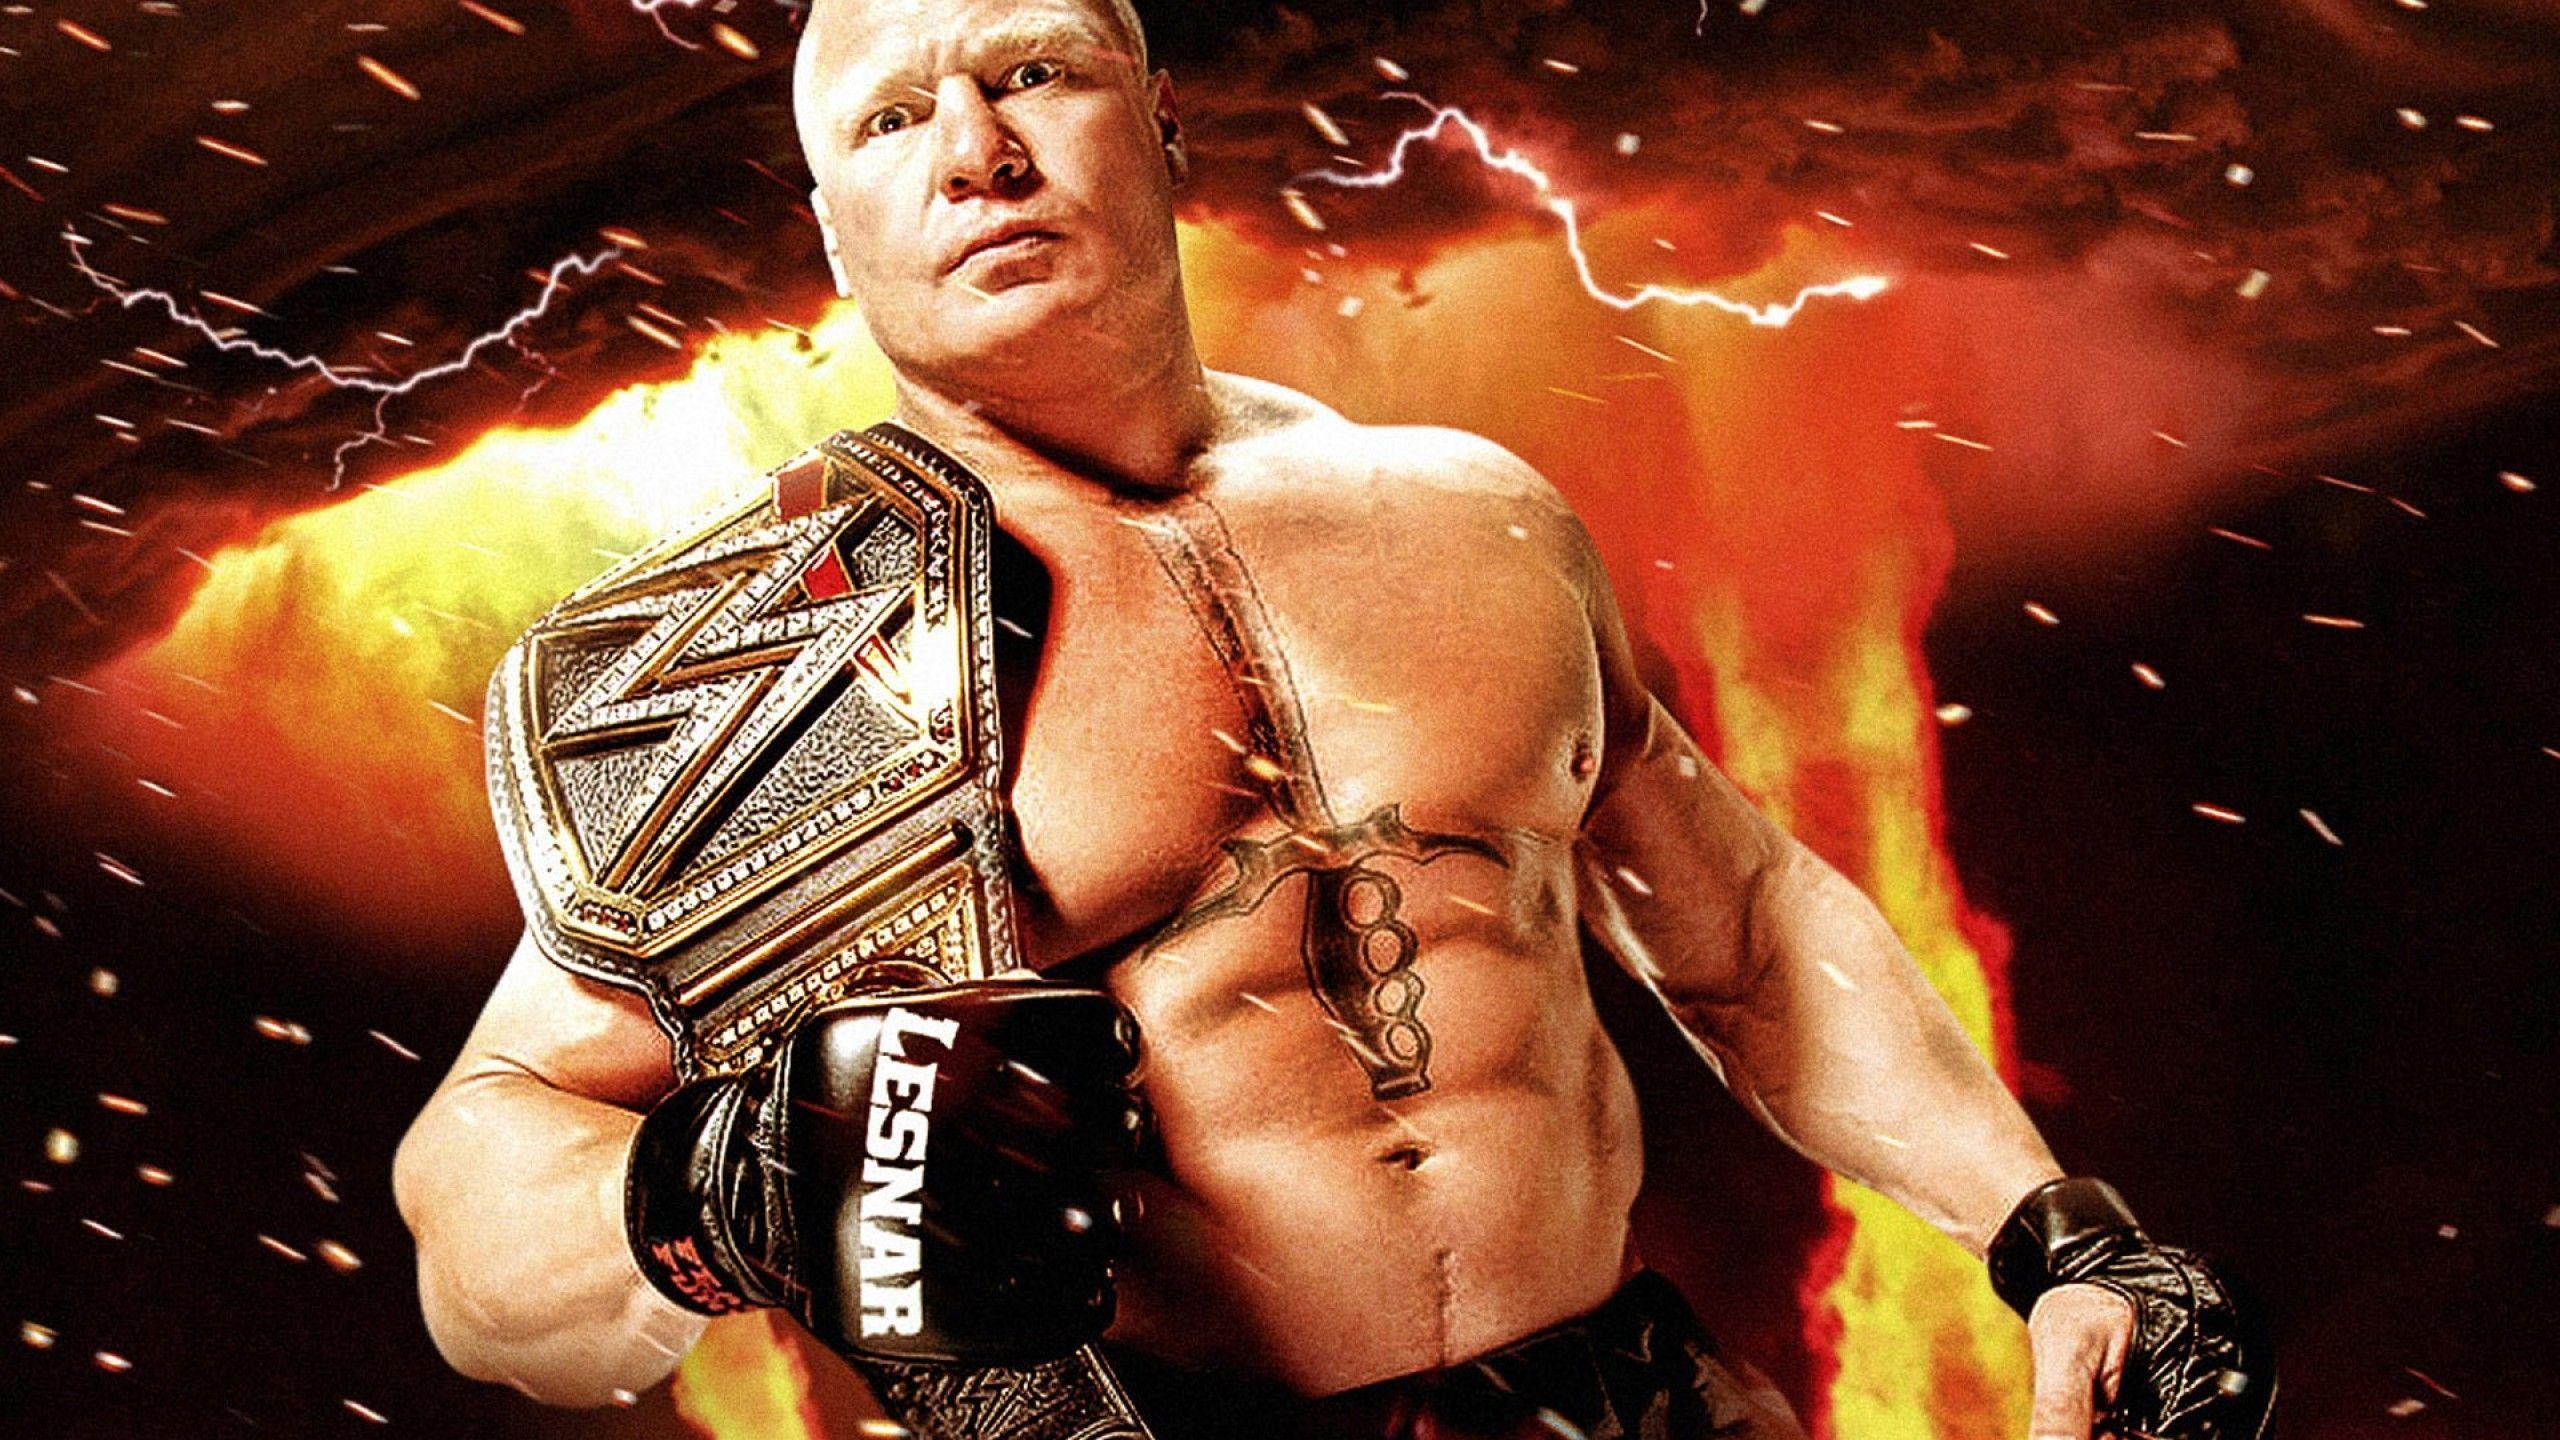 Brock Lesnar Wallpaper Free Brock Lesnar Background